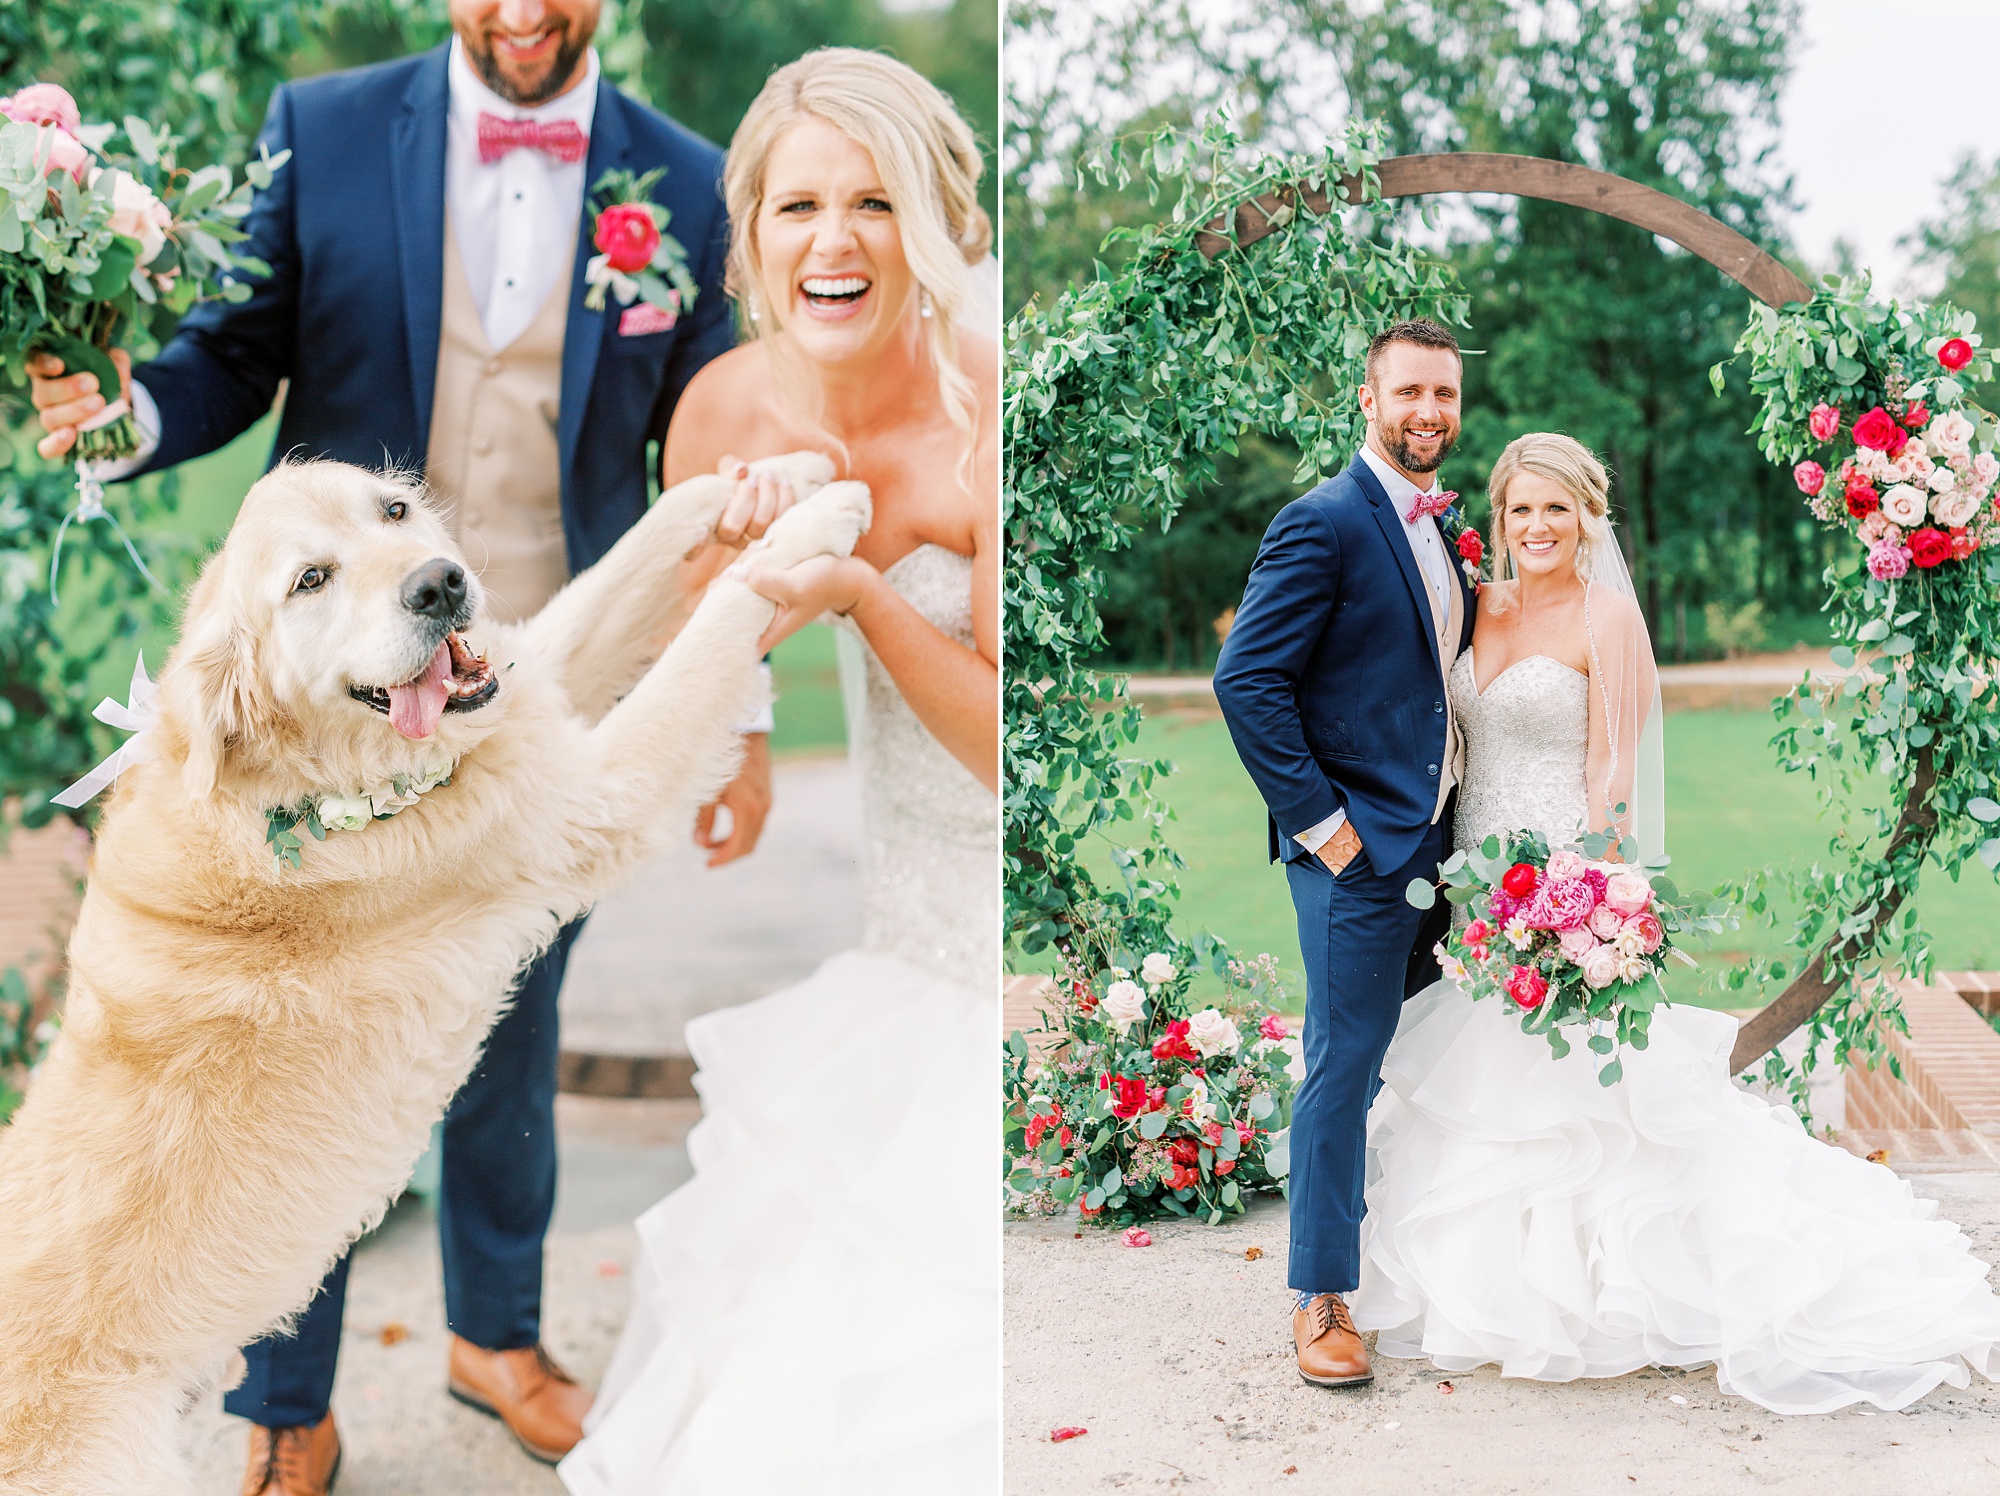 South Carolina newlyweds pose with dog on wedding day